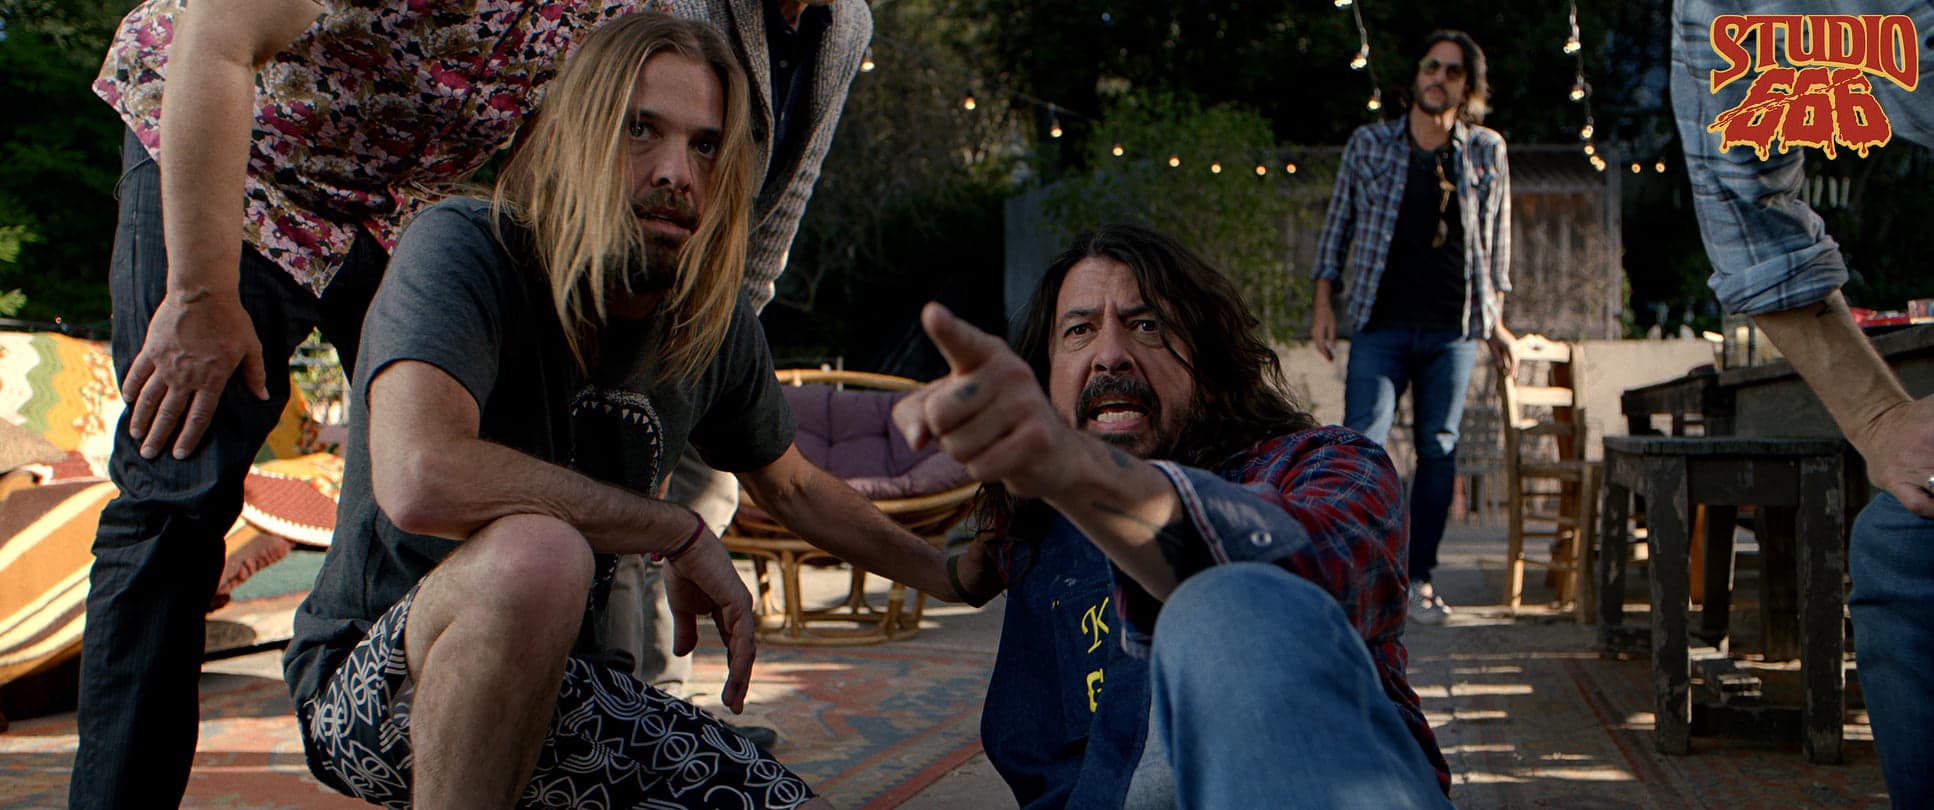 Cena do filme Studio 666, do Foo Fighters; cena mostra o vocalista Dave Grohl sentado no chão, apontando o dedo indicador para a direção da câmera, ao lado aparece o baterista Taylor Hawkins agachado